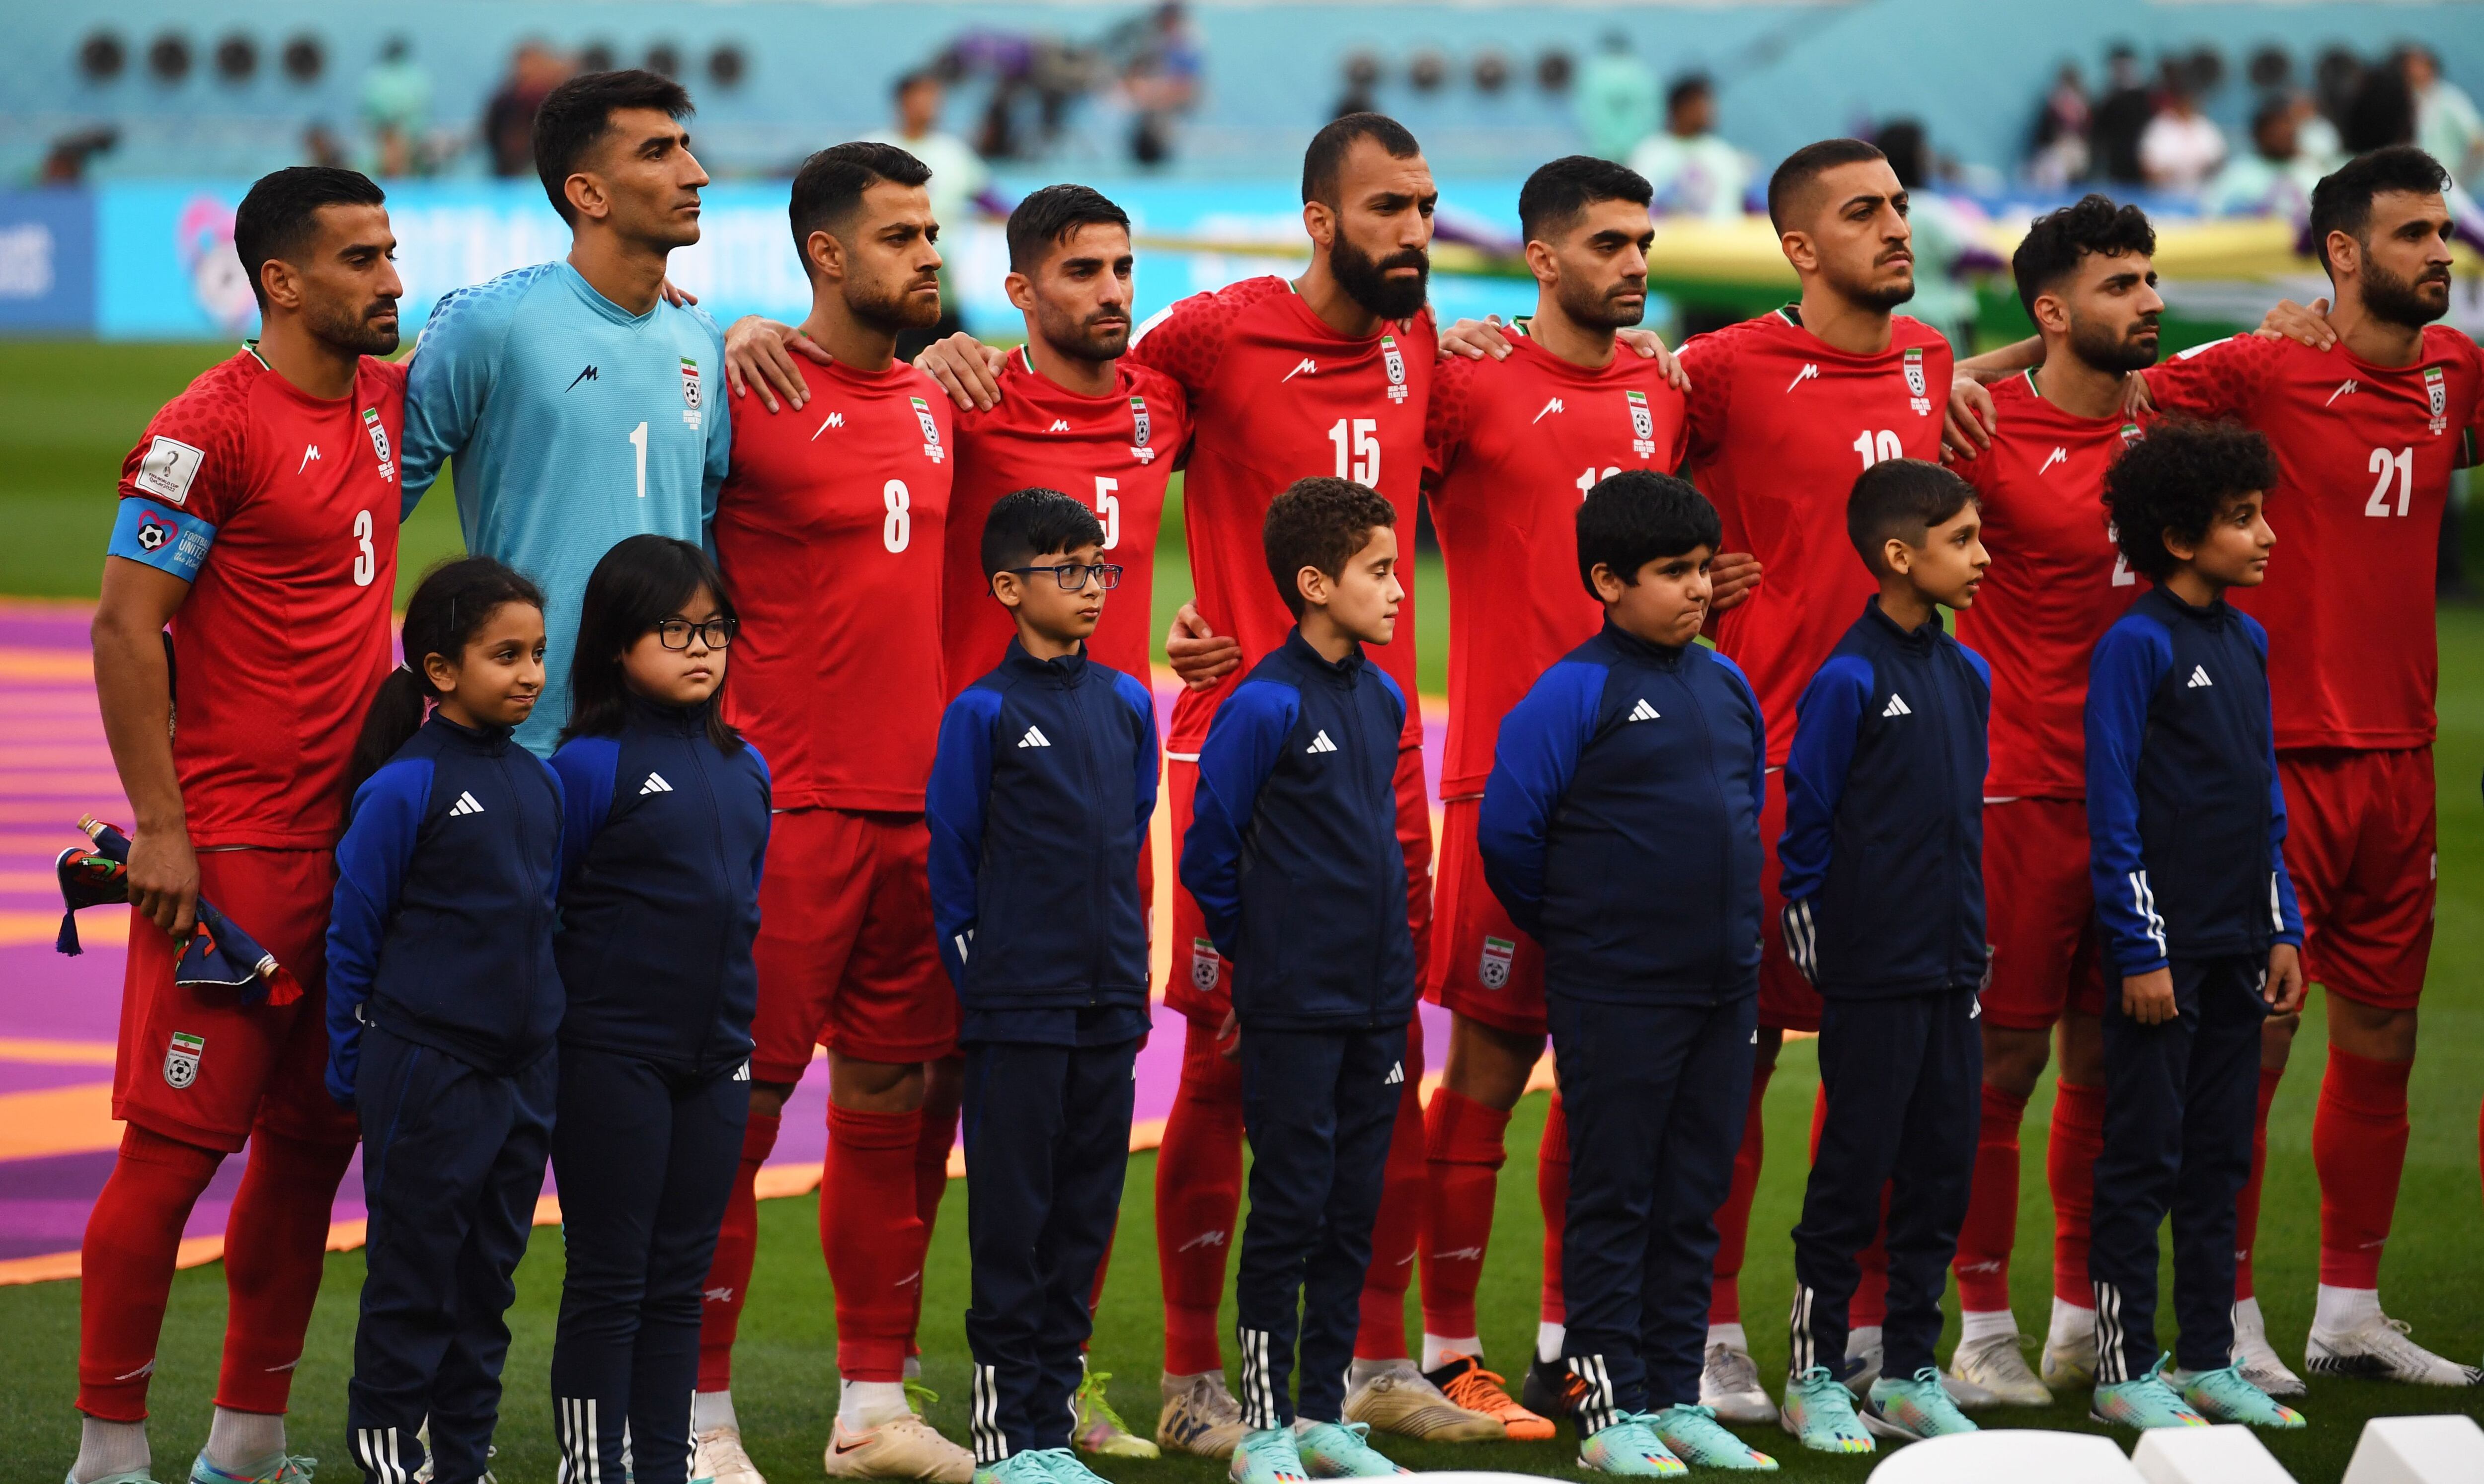 Los futbolistas de la selección de Irán no cantaron el himno de su país en señal de protesta por la situación de represión que se vive en el país y el reciente asesinato de Mahsa Amini, al inicio del partido ante Inglaterra. EFE/EPA/Neil Hall 